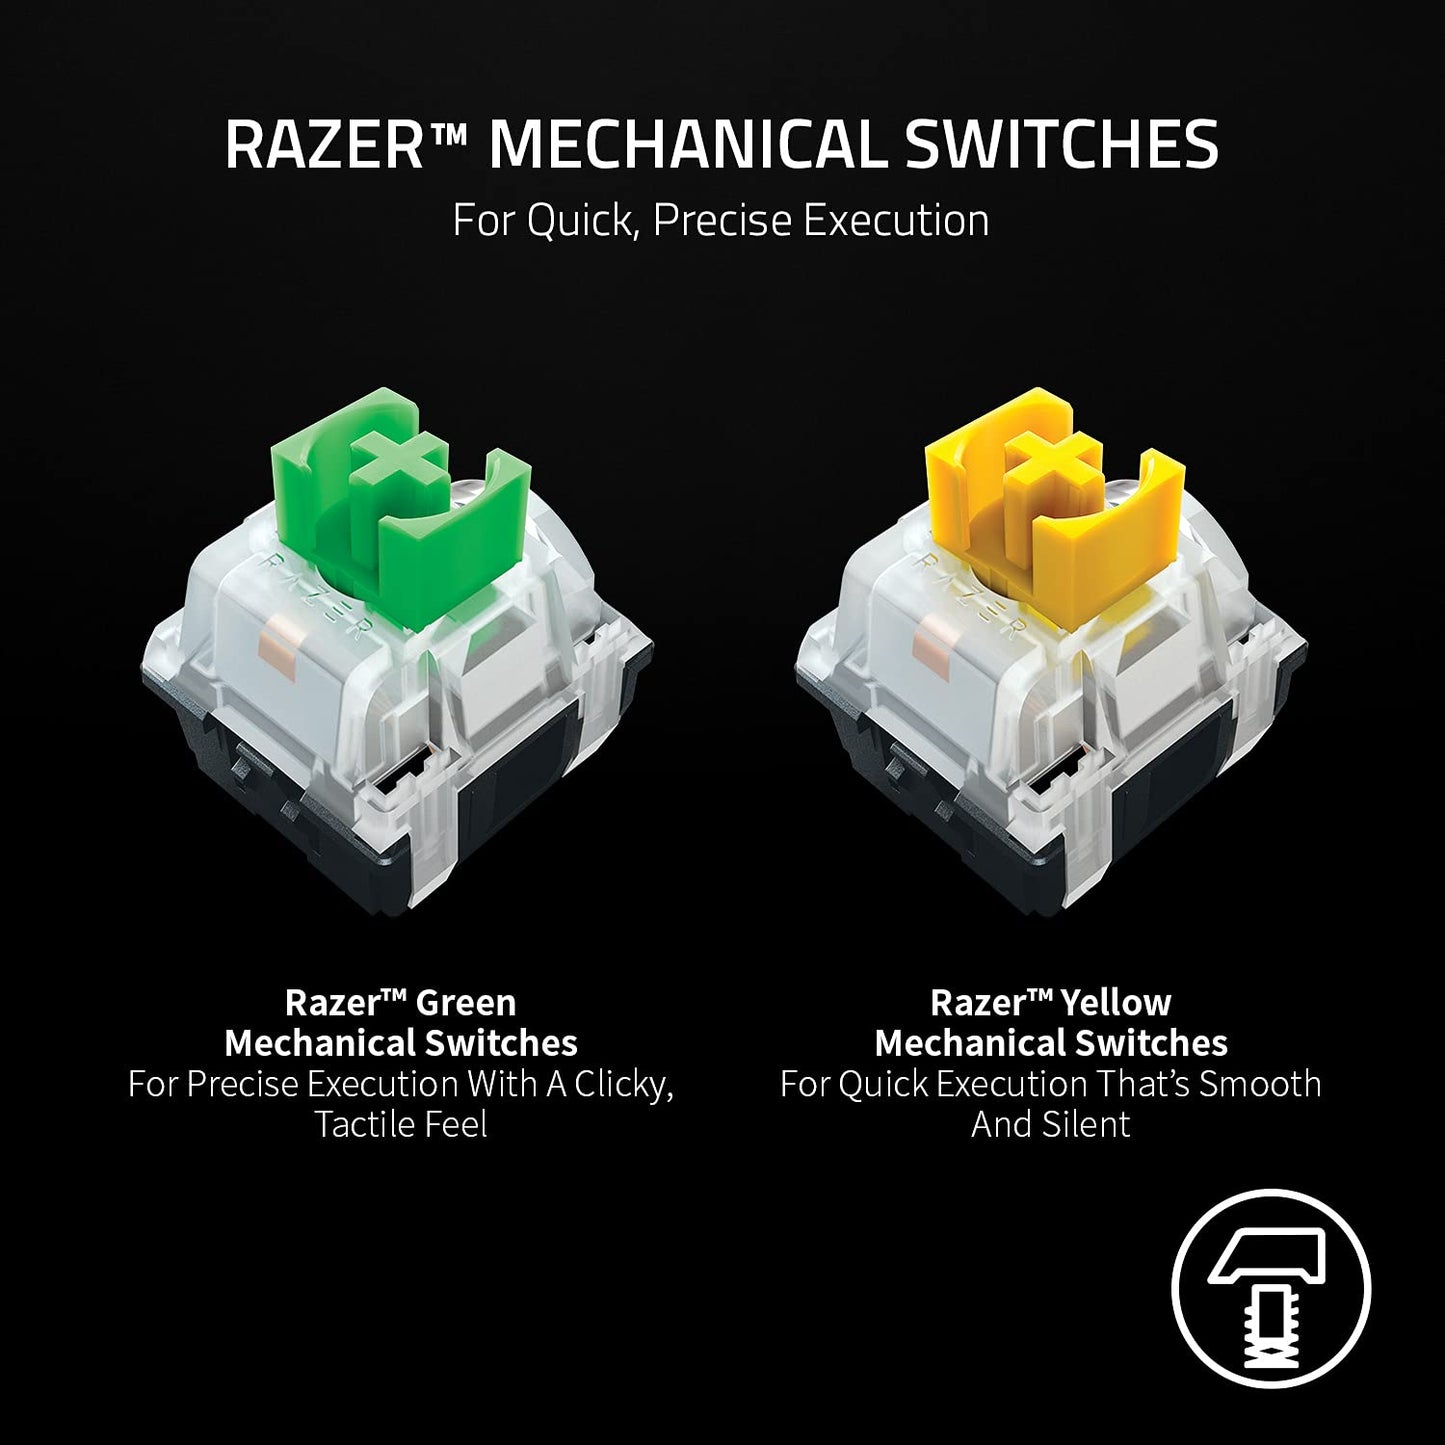 Razer BlackWidow V3 Mini HyperSpeed - Green Switch - Wireless 65% Mechanical Gaming Keyboard with Razer Chroma RGB - ‎RZ03-03891400-R3M1